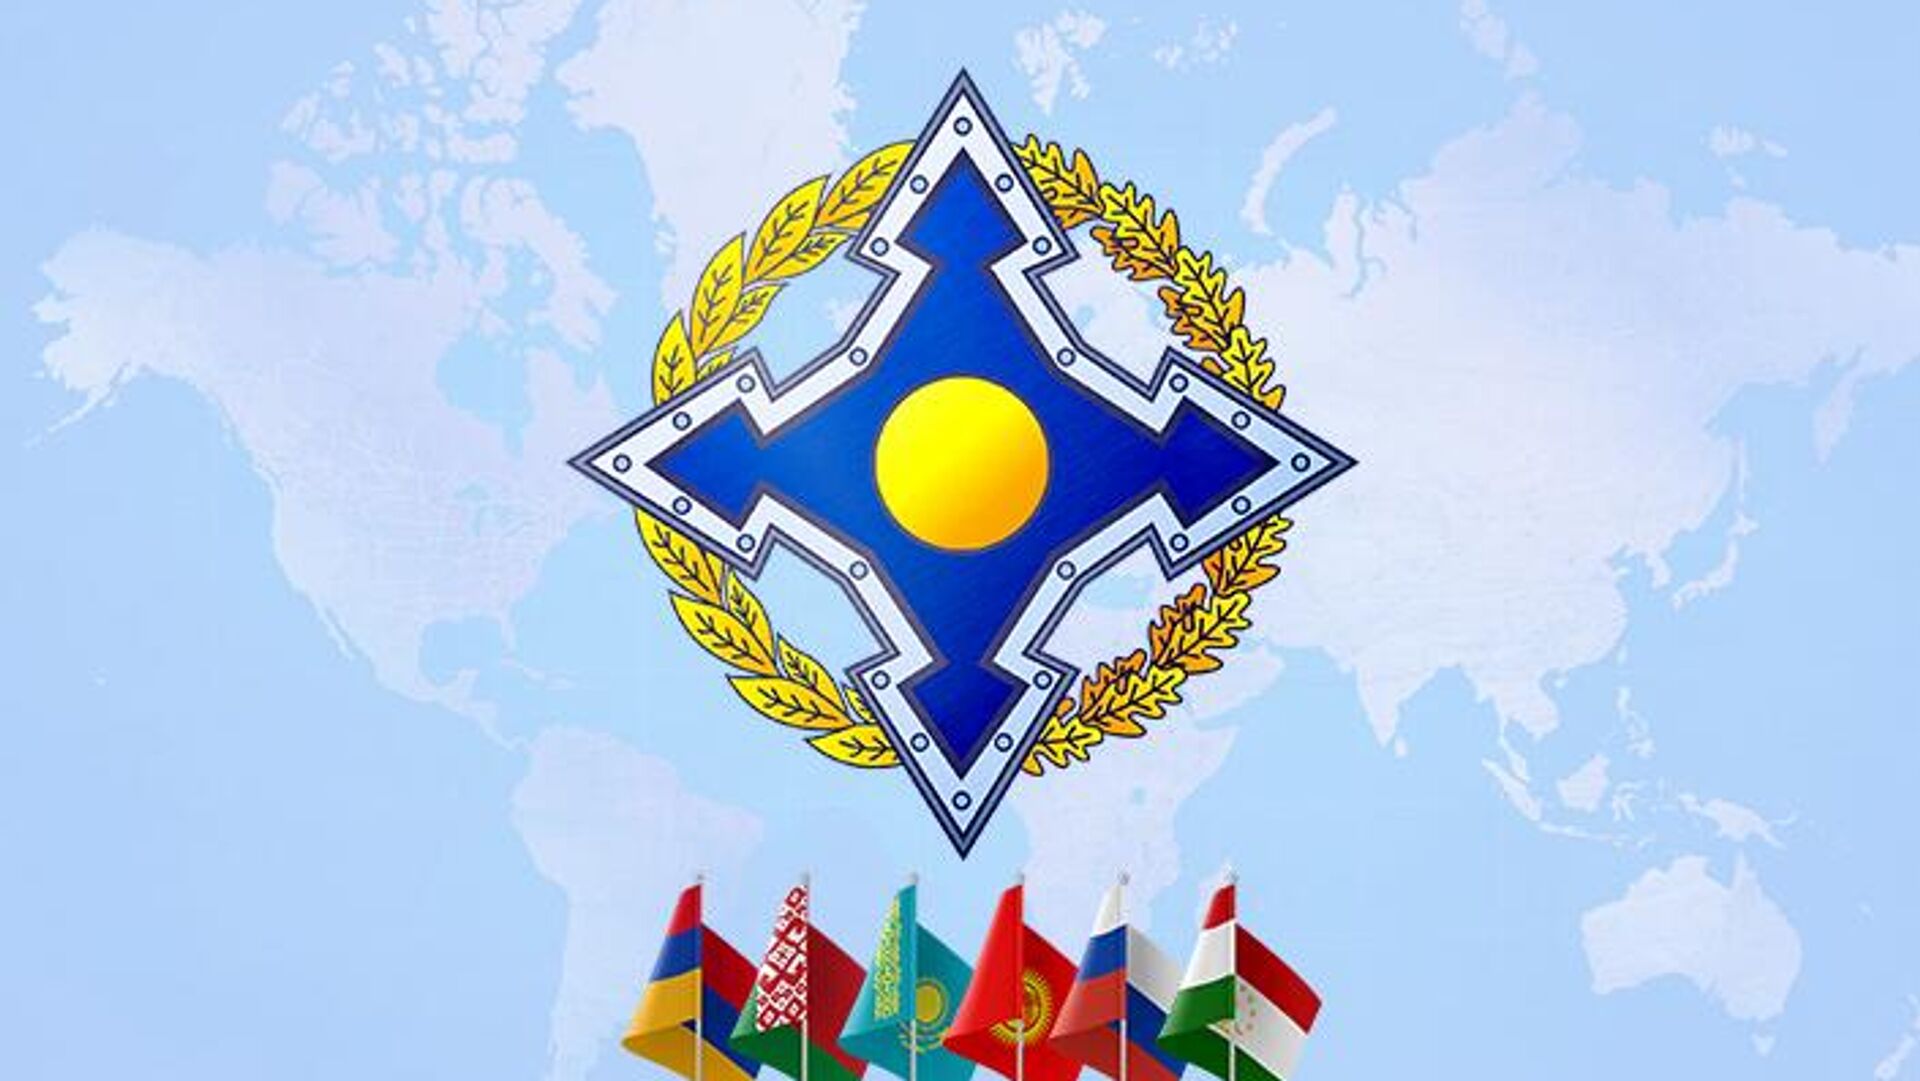 Թաալաթբեկ Մասադիկովը նշանակվել է ՀԱՊԿ գլխավոր քարտուղարի խաղաղապահության հարցերի գխով հատուկ ներկայացուցիչ